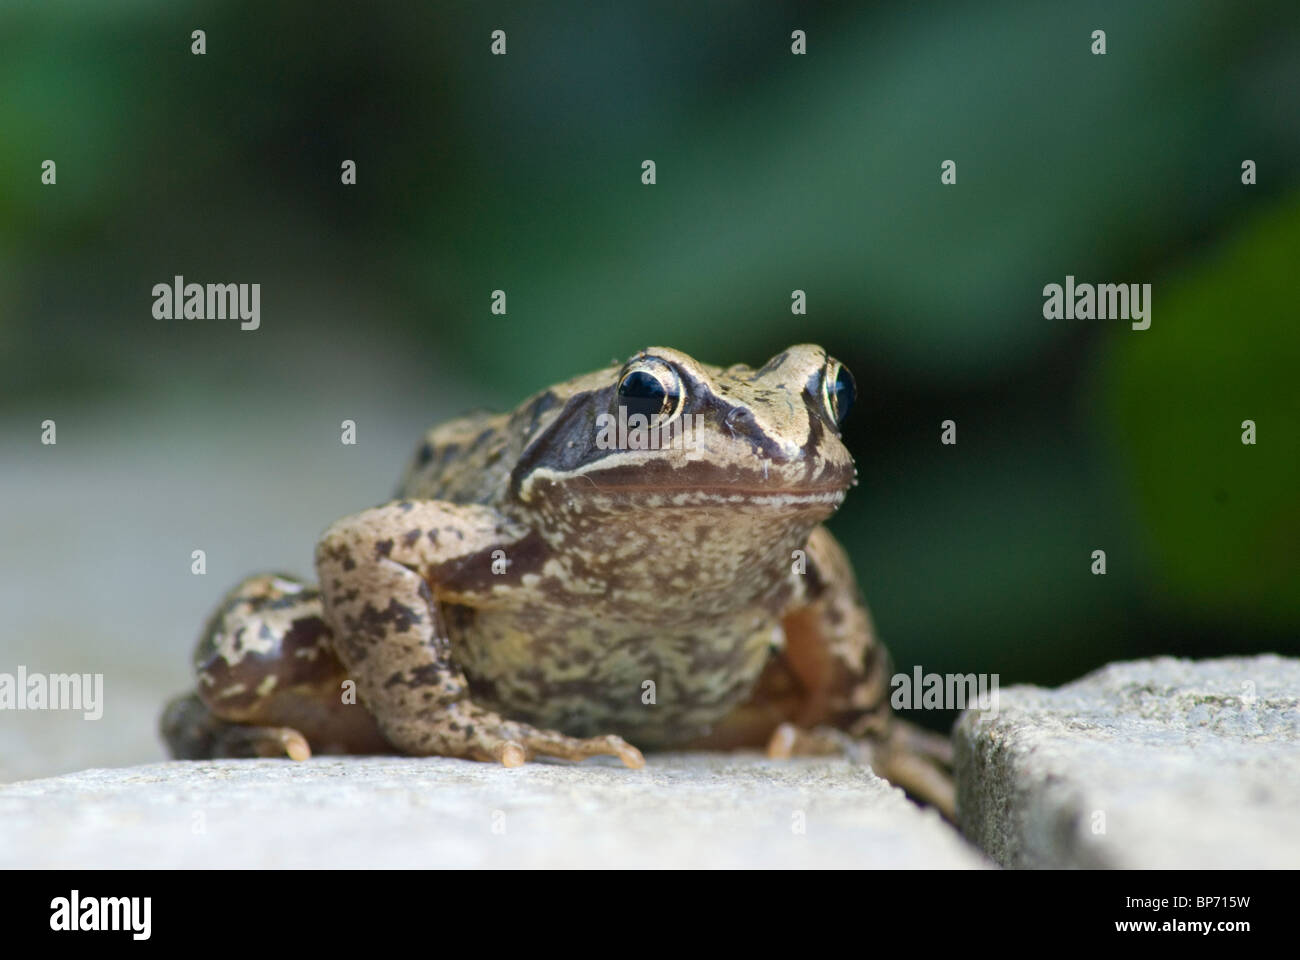 Common frog Stock Photo